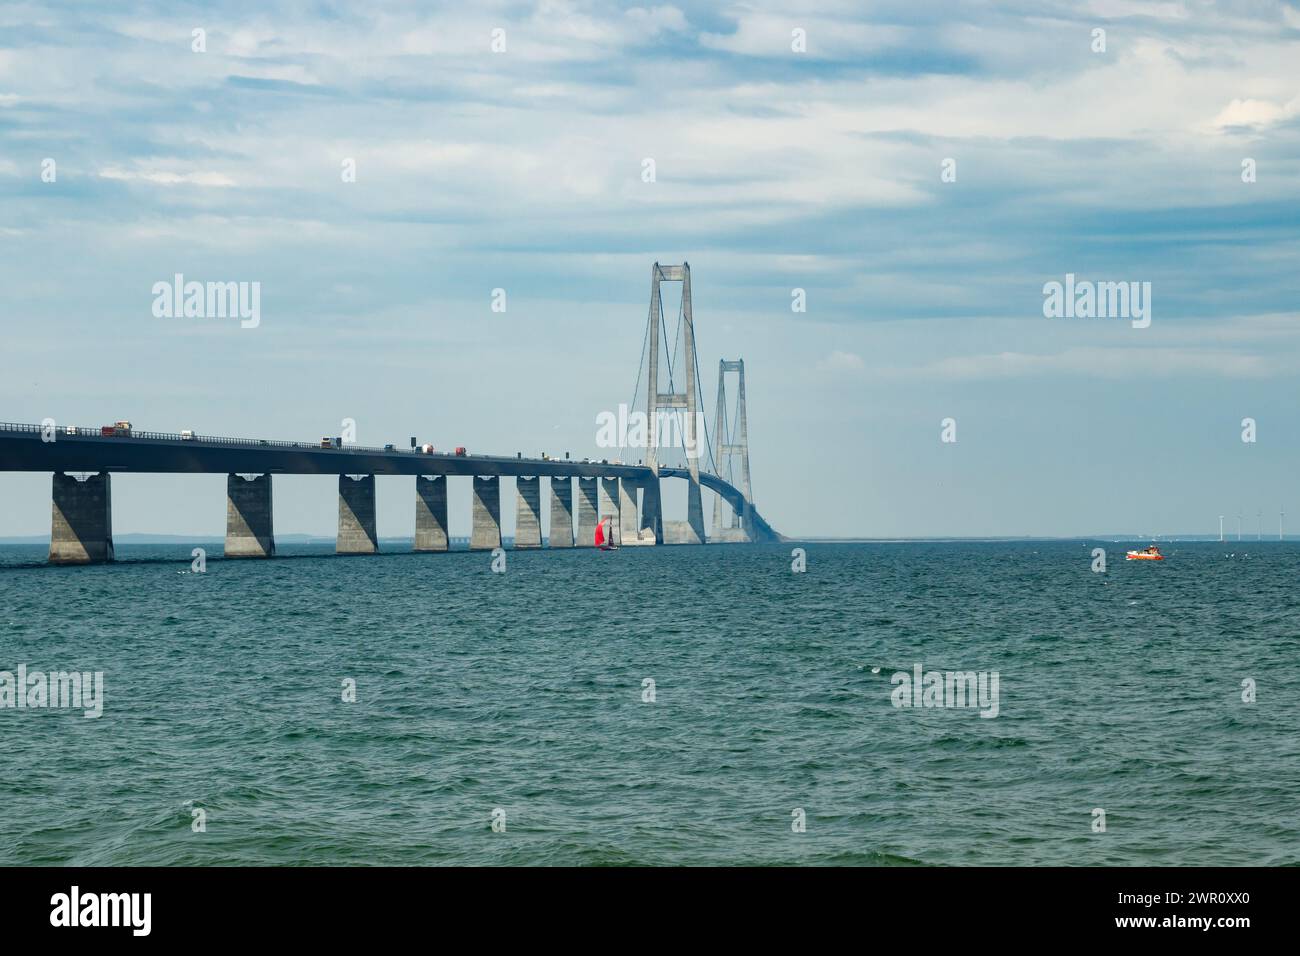 Il grande belt ponte Storebelt in Danimarca, che collegano la Zelanda con Funen. Foto Stock